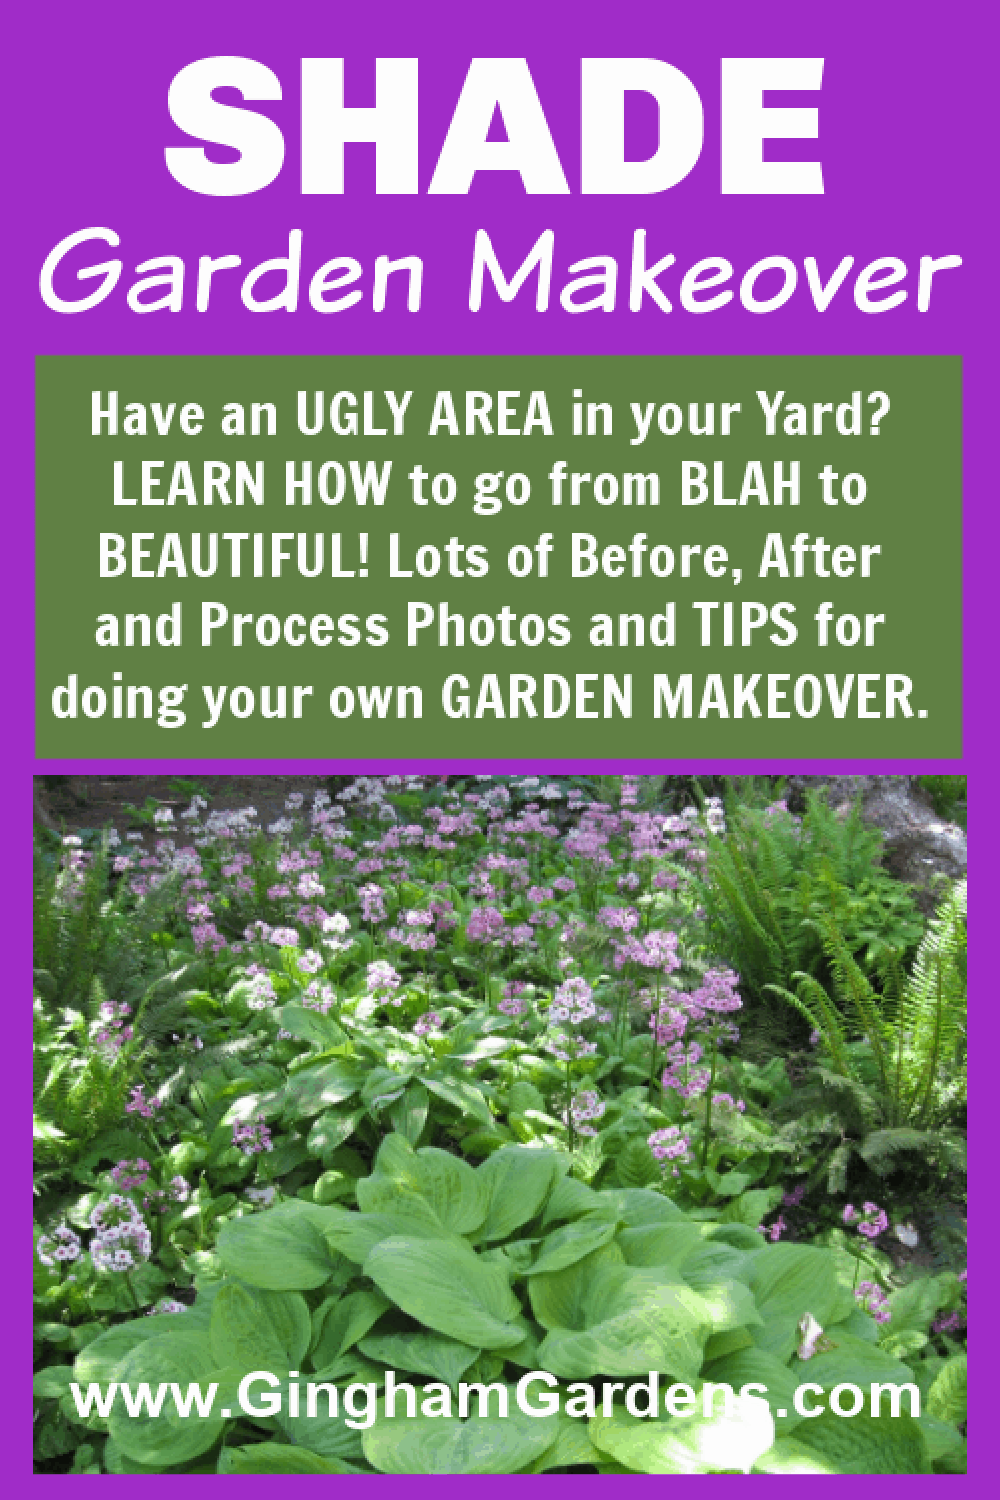 Image of a Shade Garden with text overlay - Shade Garden Makeover